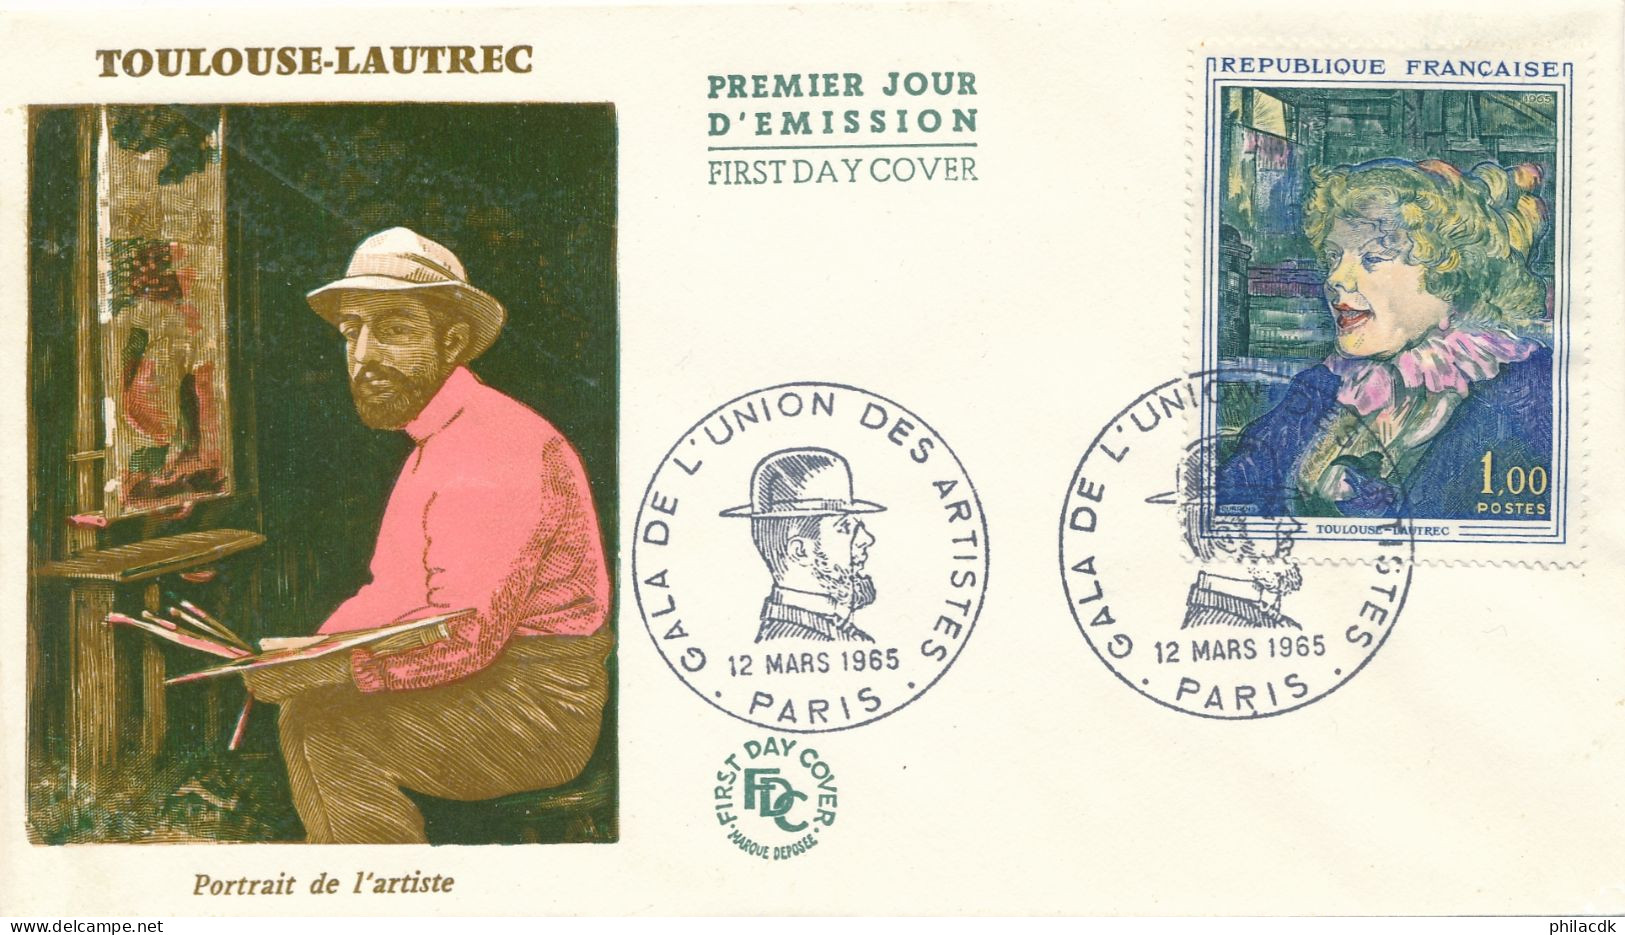 FRANCE - ENVELOPPE PREMIER JOUR TOULOUSE LAUTREC TABLEAU PORTRAIT DE L ARTISTE OBLITEREE PARIS DU 12 MARS 1965 - 1960-1969